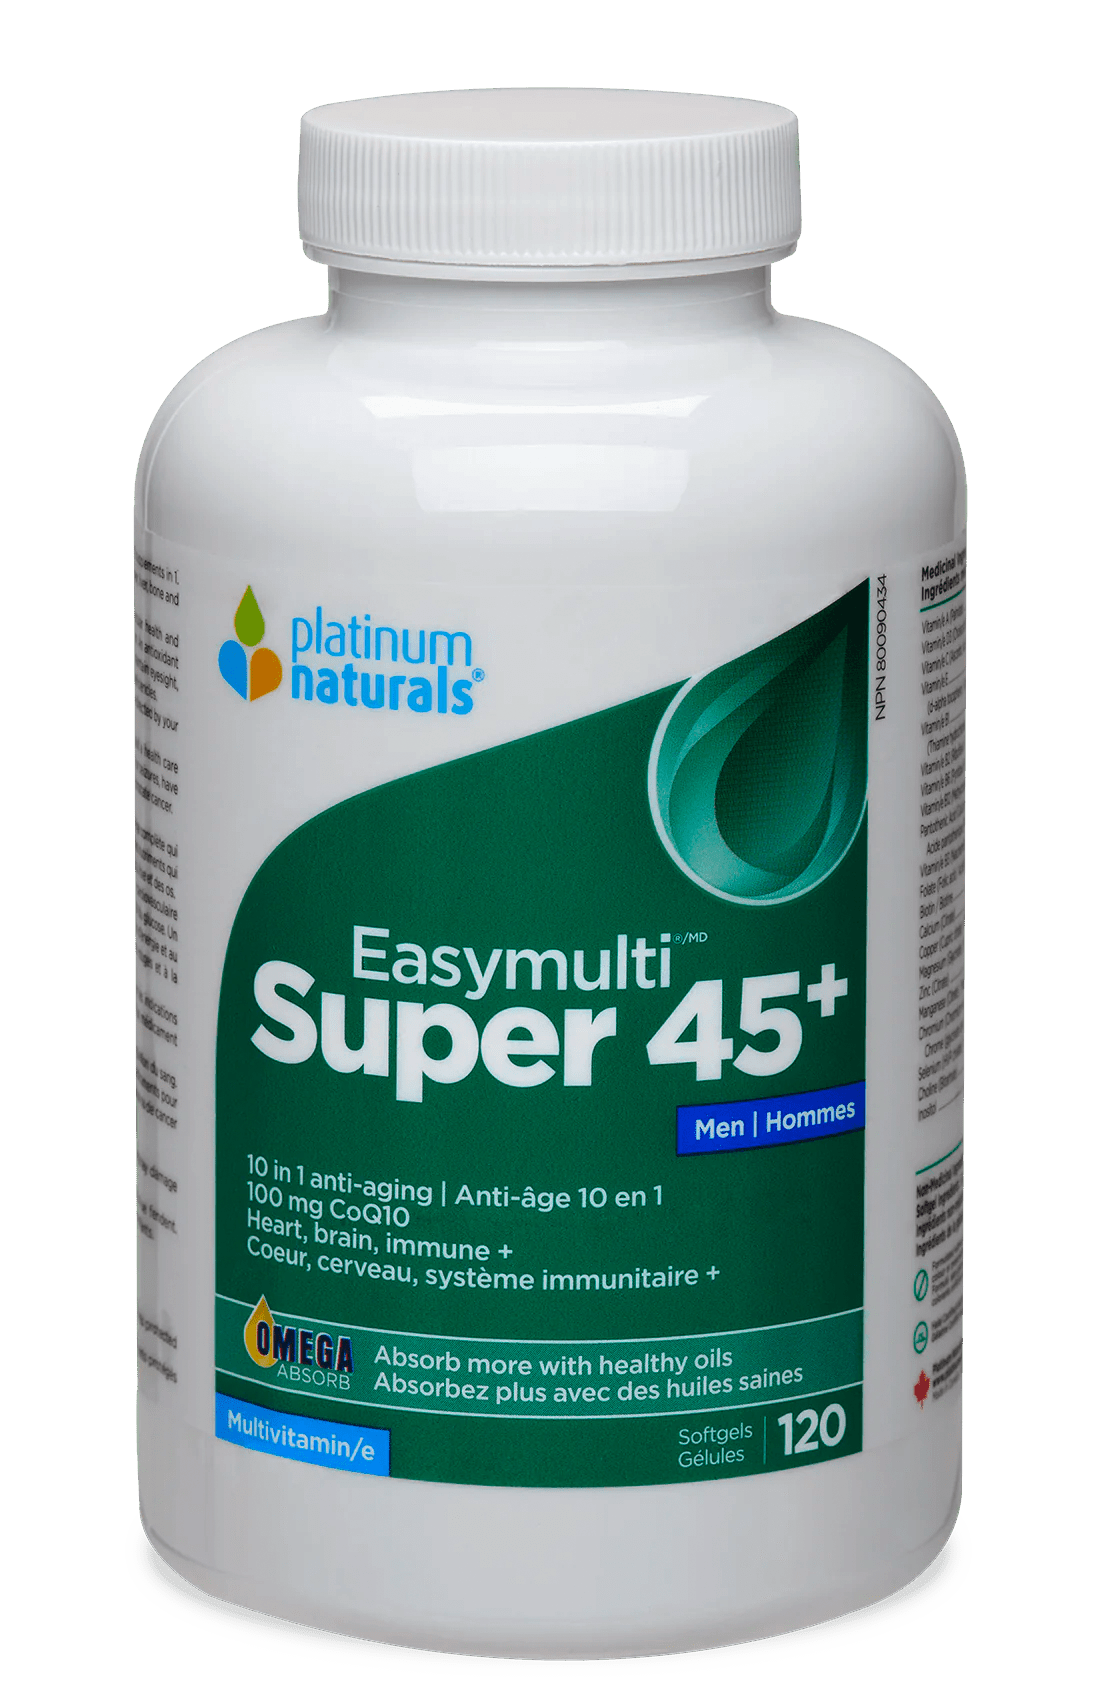 Super Easymulti 45+ for Men Multivitamin Platinum Naturals 120 